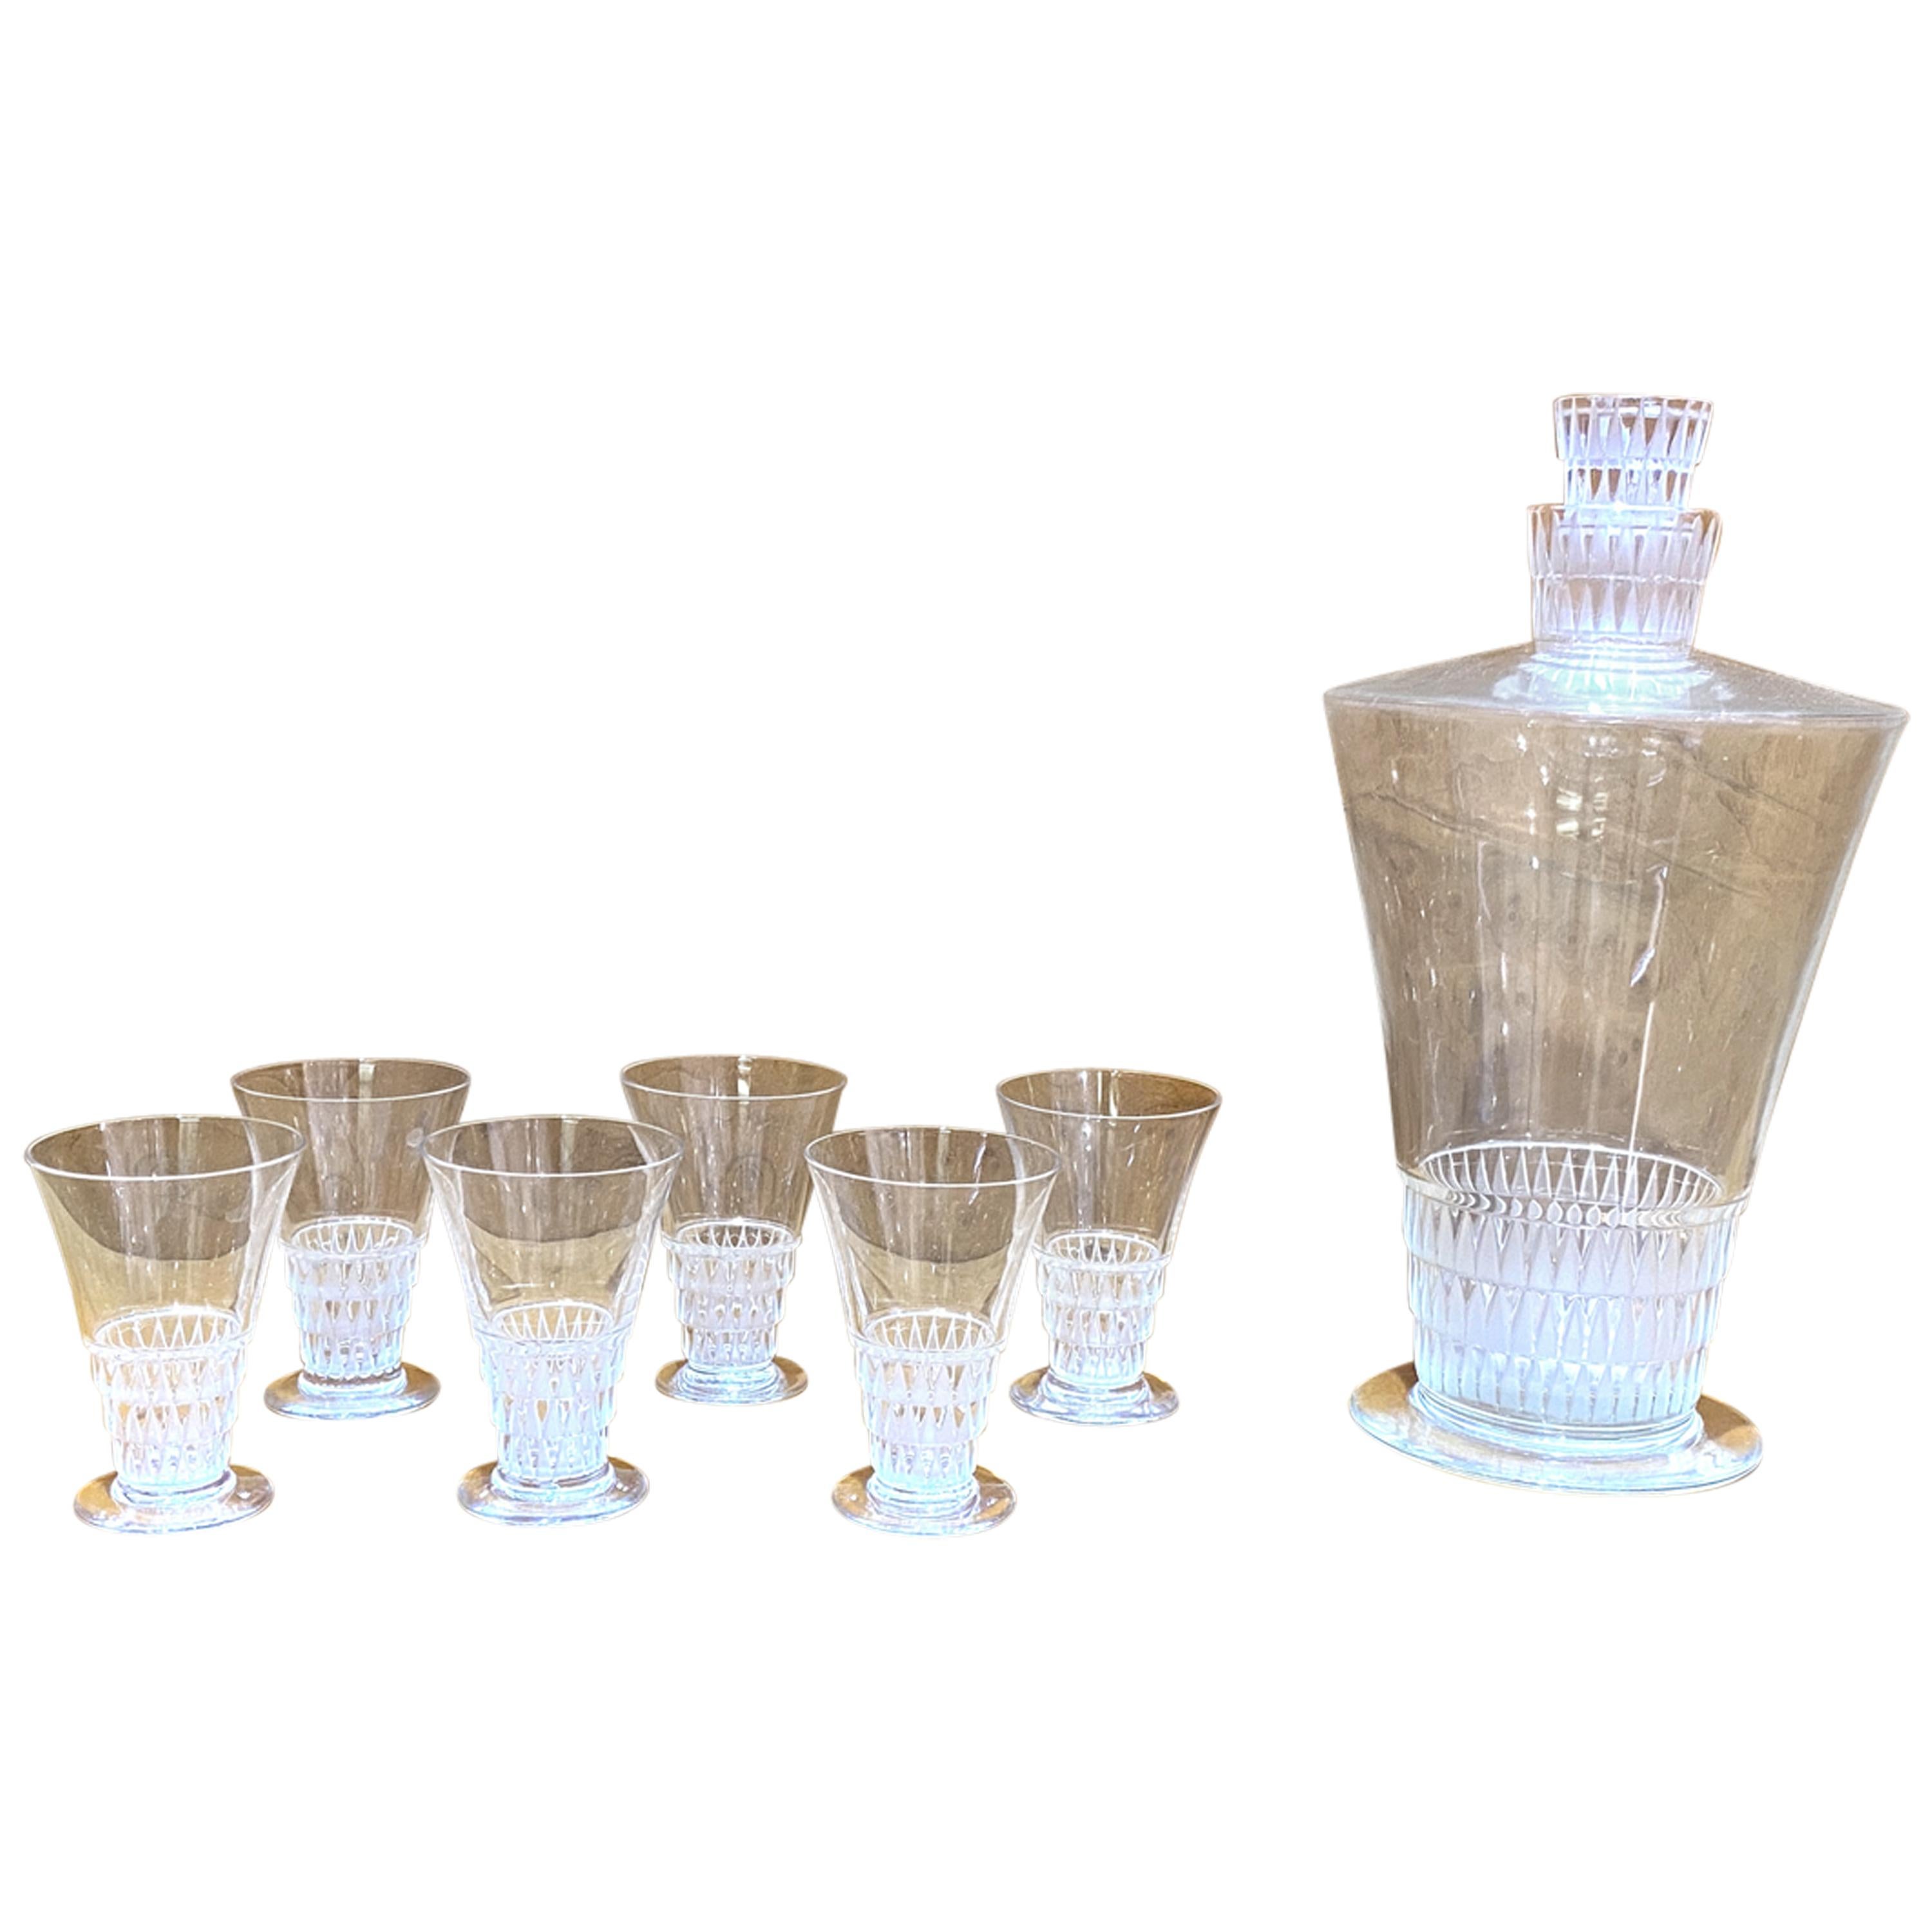 1930 René Lalique Original Bourgueil Liquor Set of 7 Pieces 6 Glasses 1 Decanter